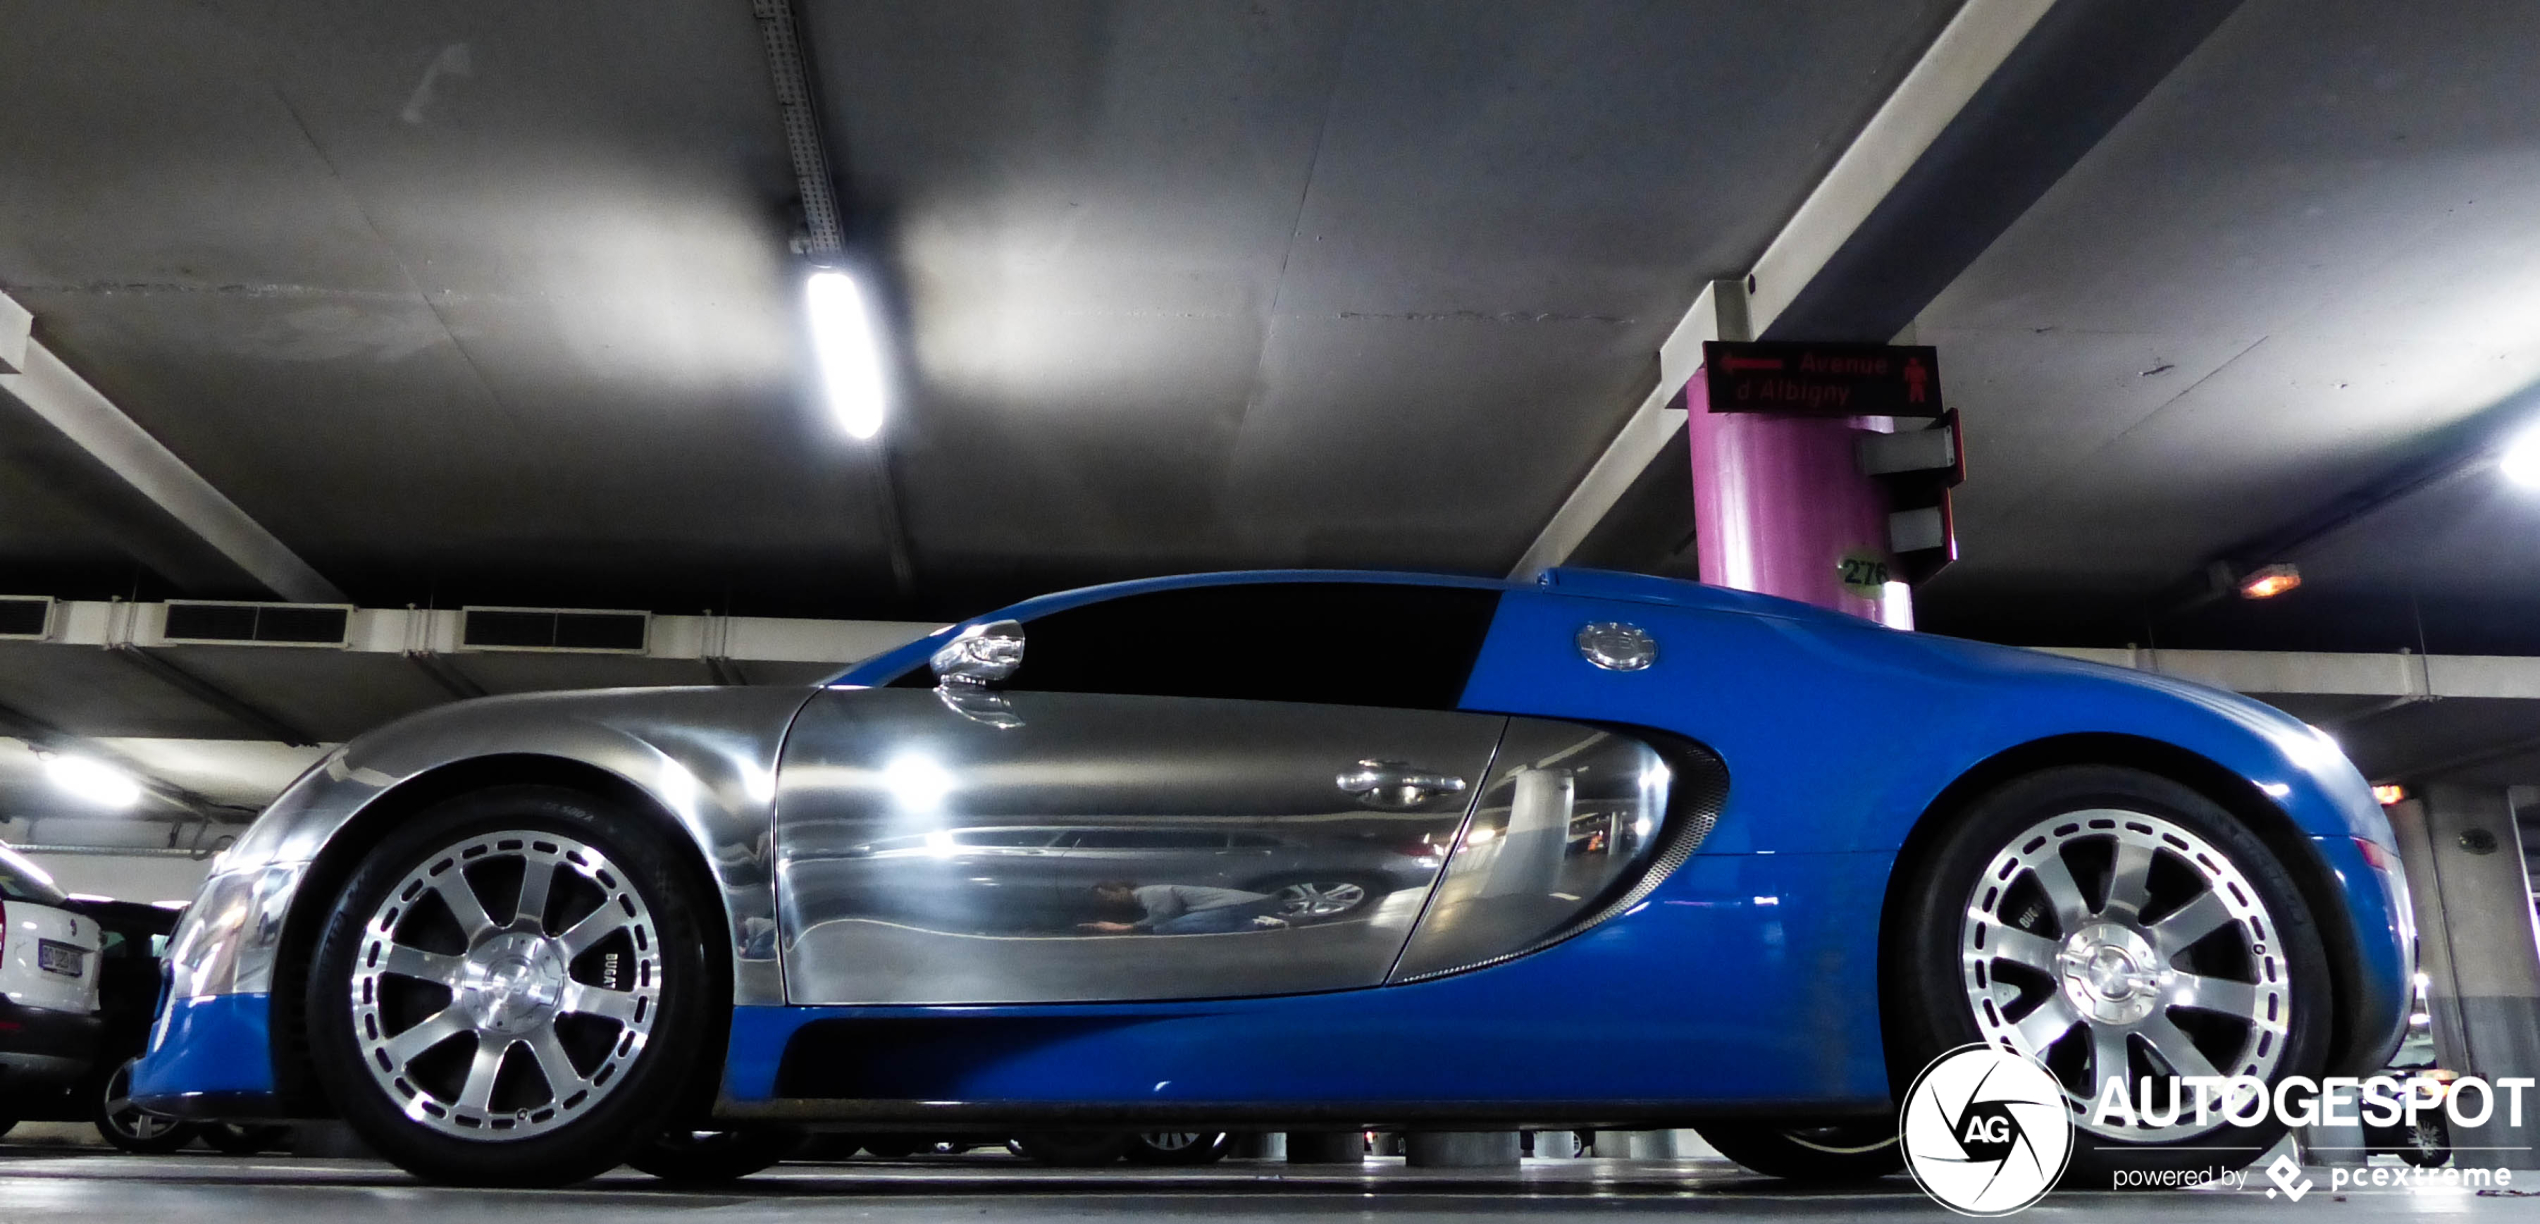 Topspot: op de knieën voor de Bugatti Veyron 16.4 Centenaire